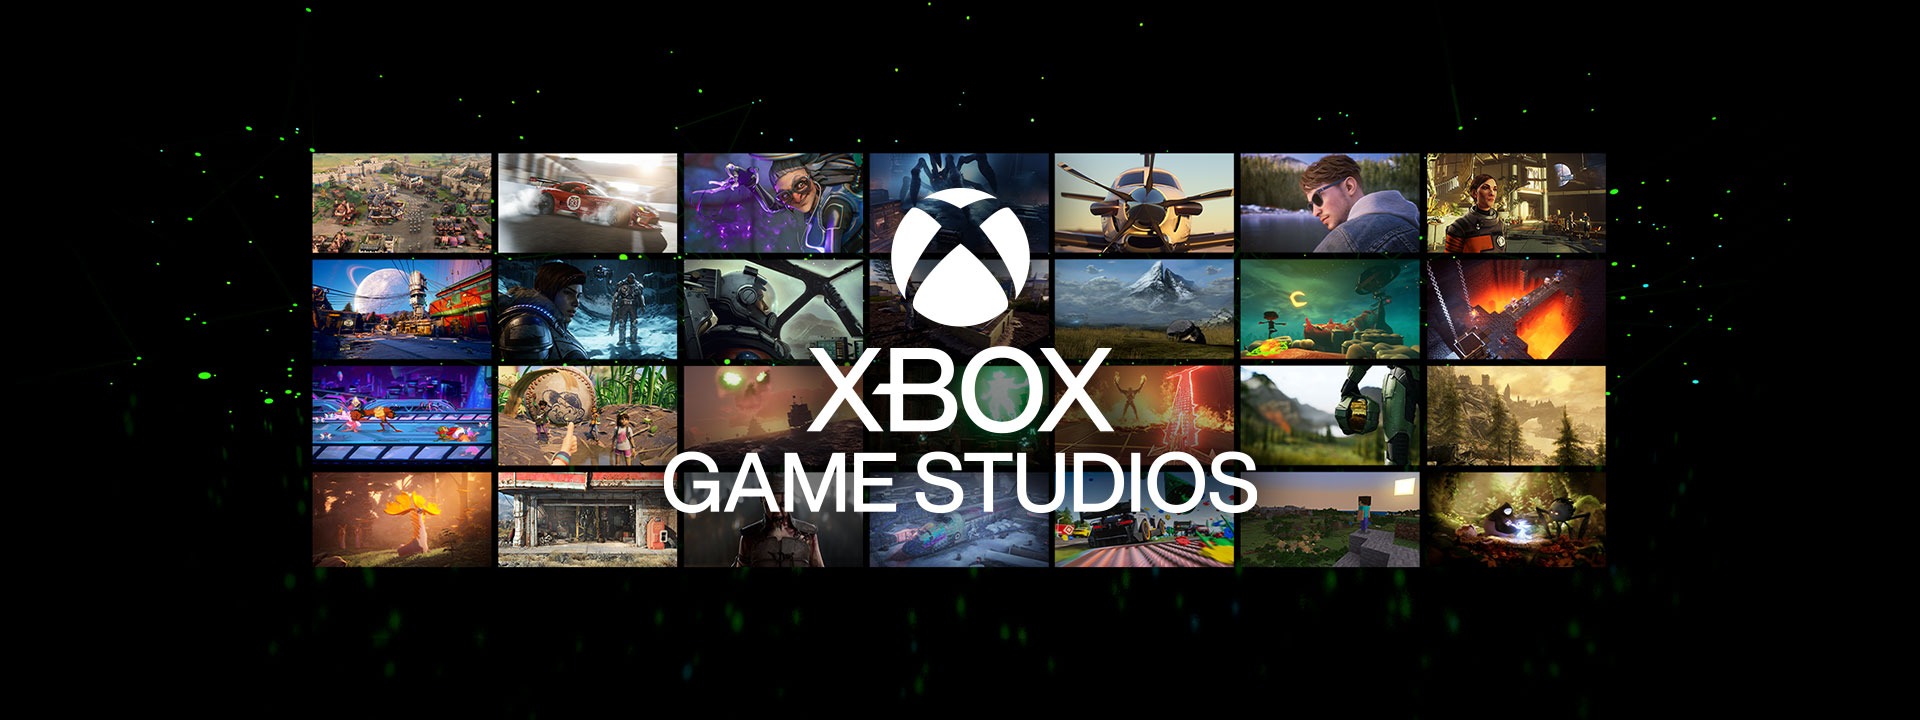 Gli Xbox Game Studios potrebbero cambiare subendo un rebranding